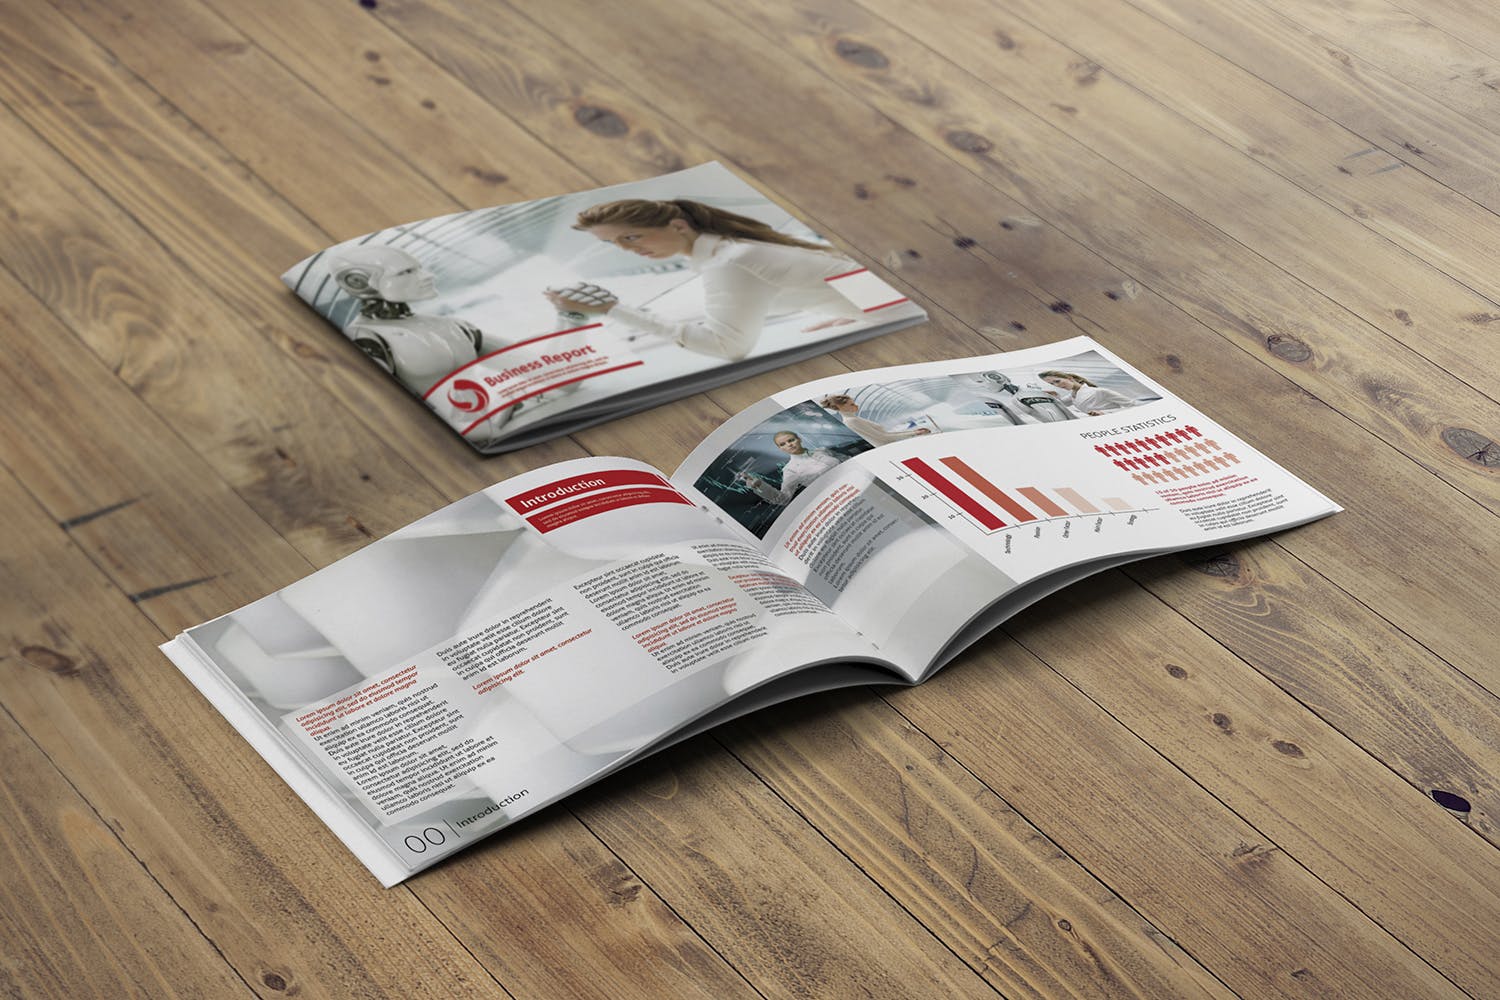 宣传画册/企业画册封面&内页版式设计45度角效果图样机蚂蚁素材精选 Cover & Open Landscape Brochure Mockup插图(2)